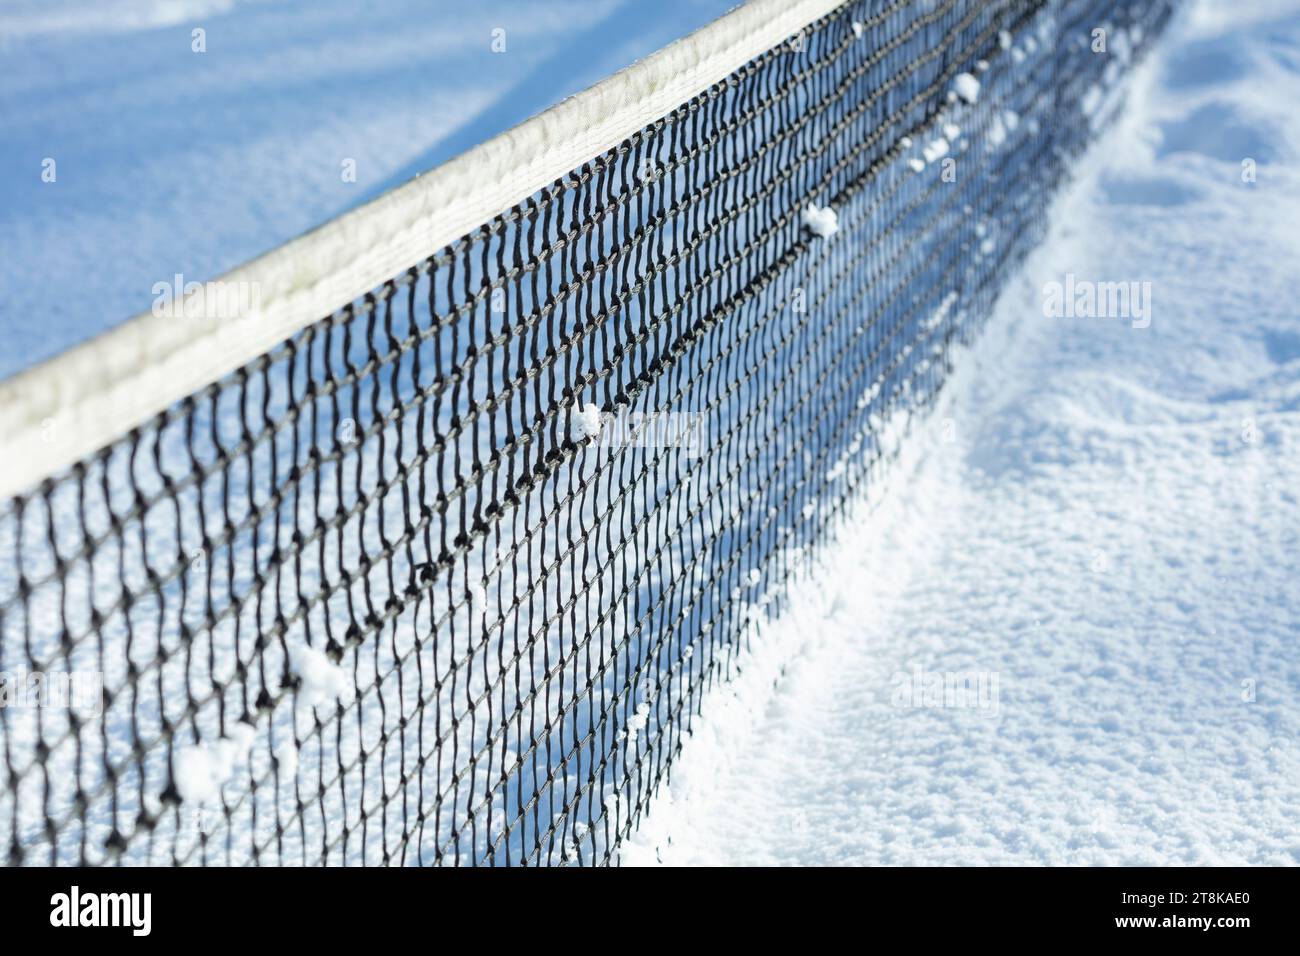 Filet de tennis et neige Banque D'Images